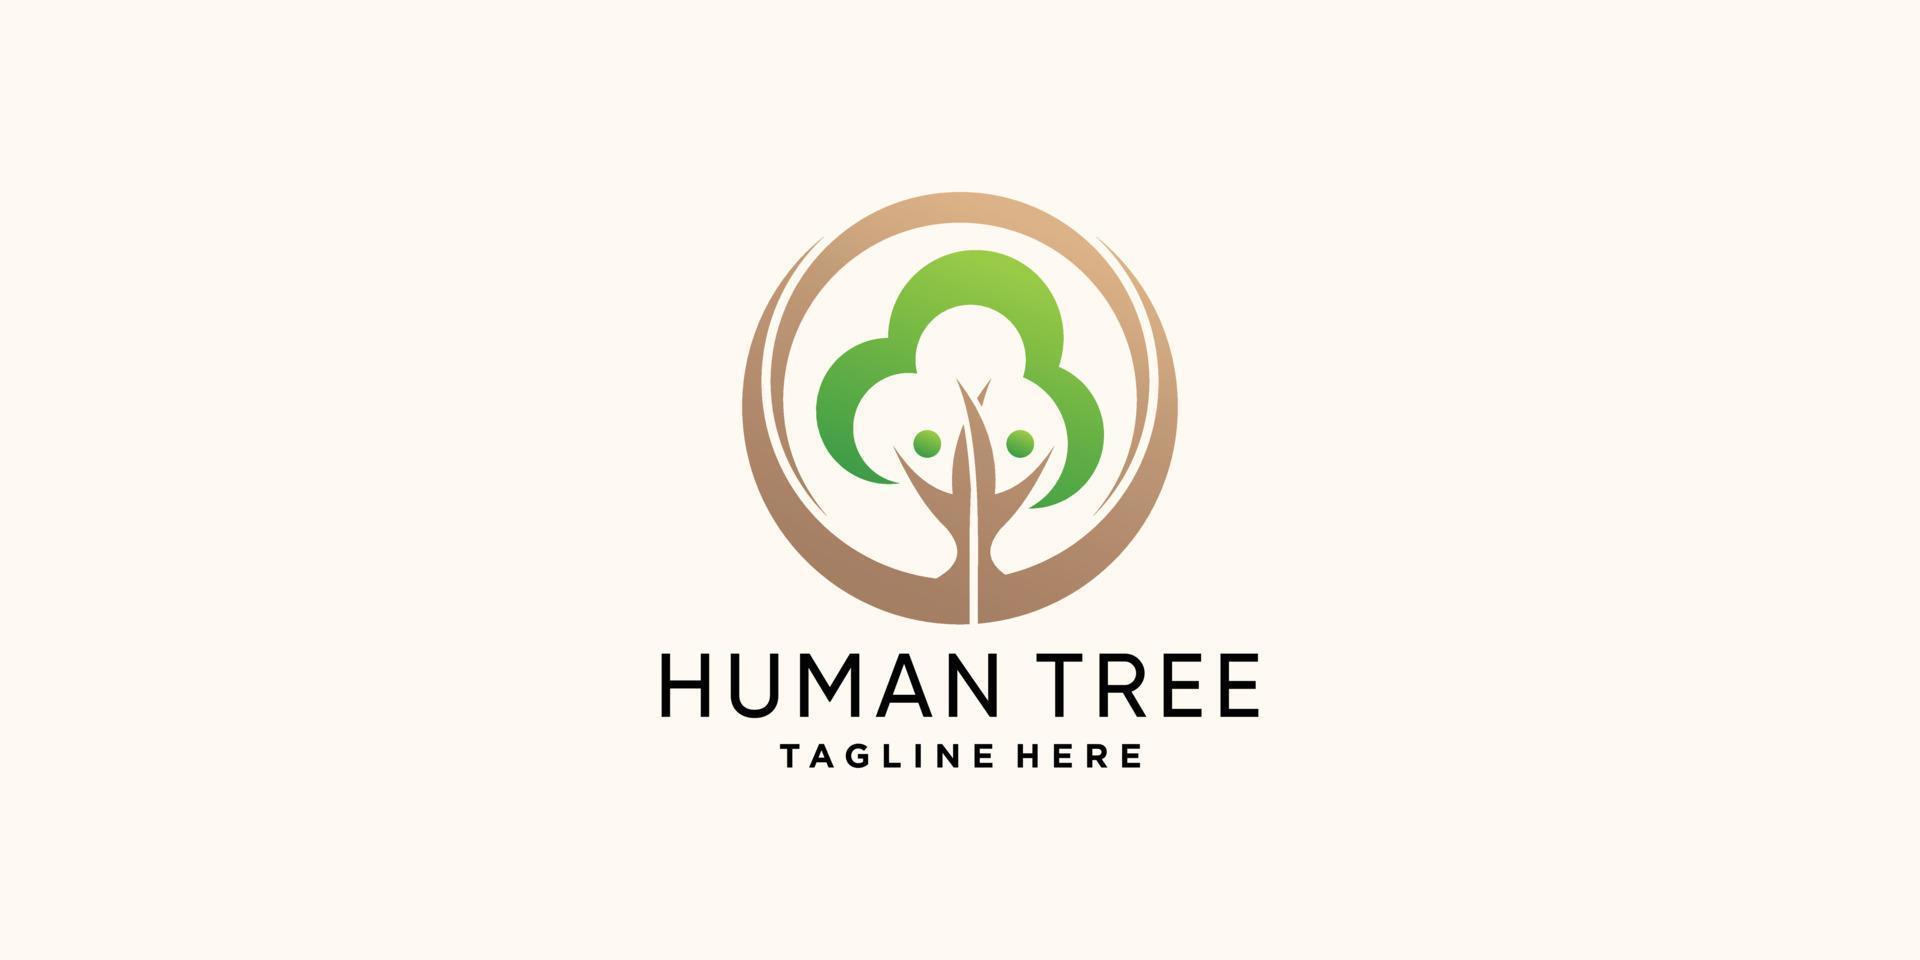 kreative menschliche Baum-Logo-Designvorlage mit Blattelement und Premium-Vektor des modernen Stilkonzepts vektor